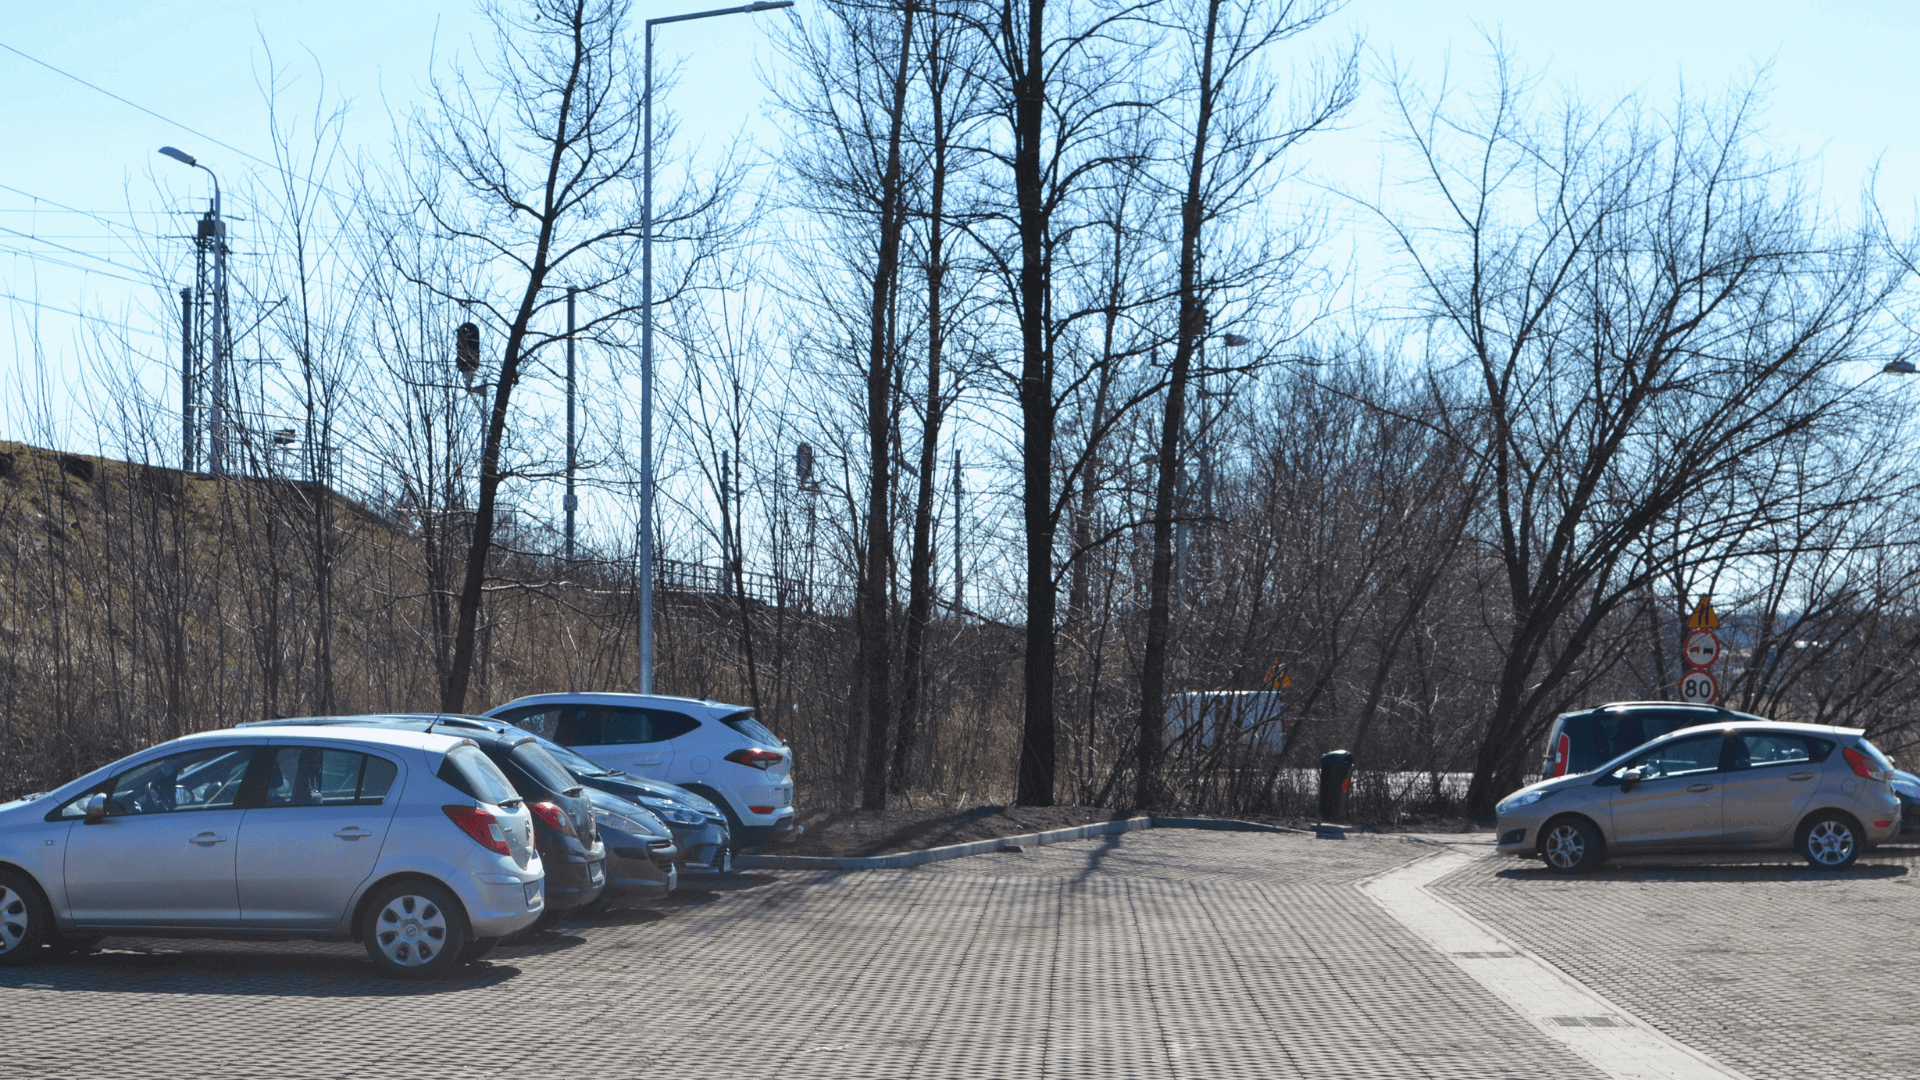 Nowy parking przy stacji kolejowej Katowic Podlesie